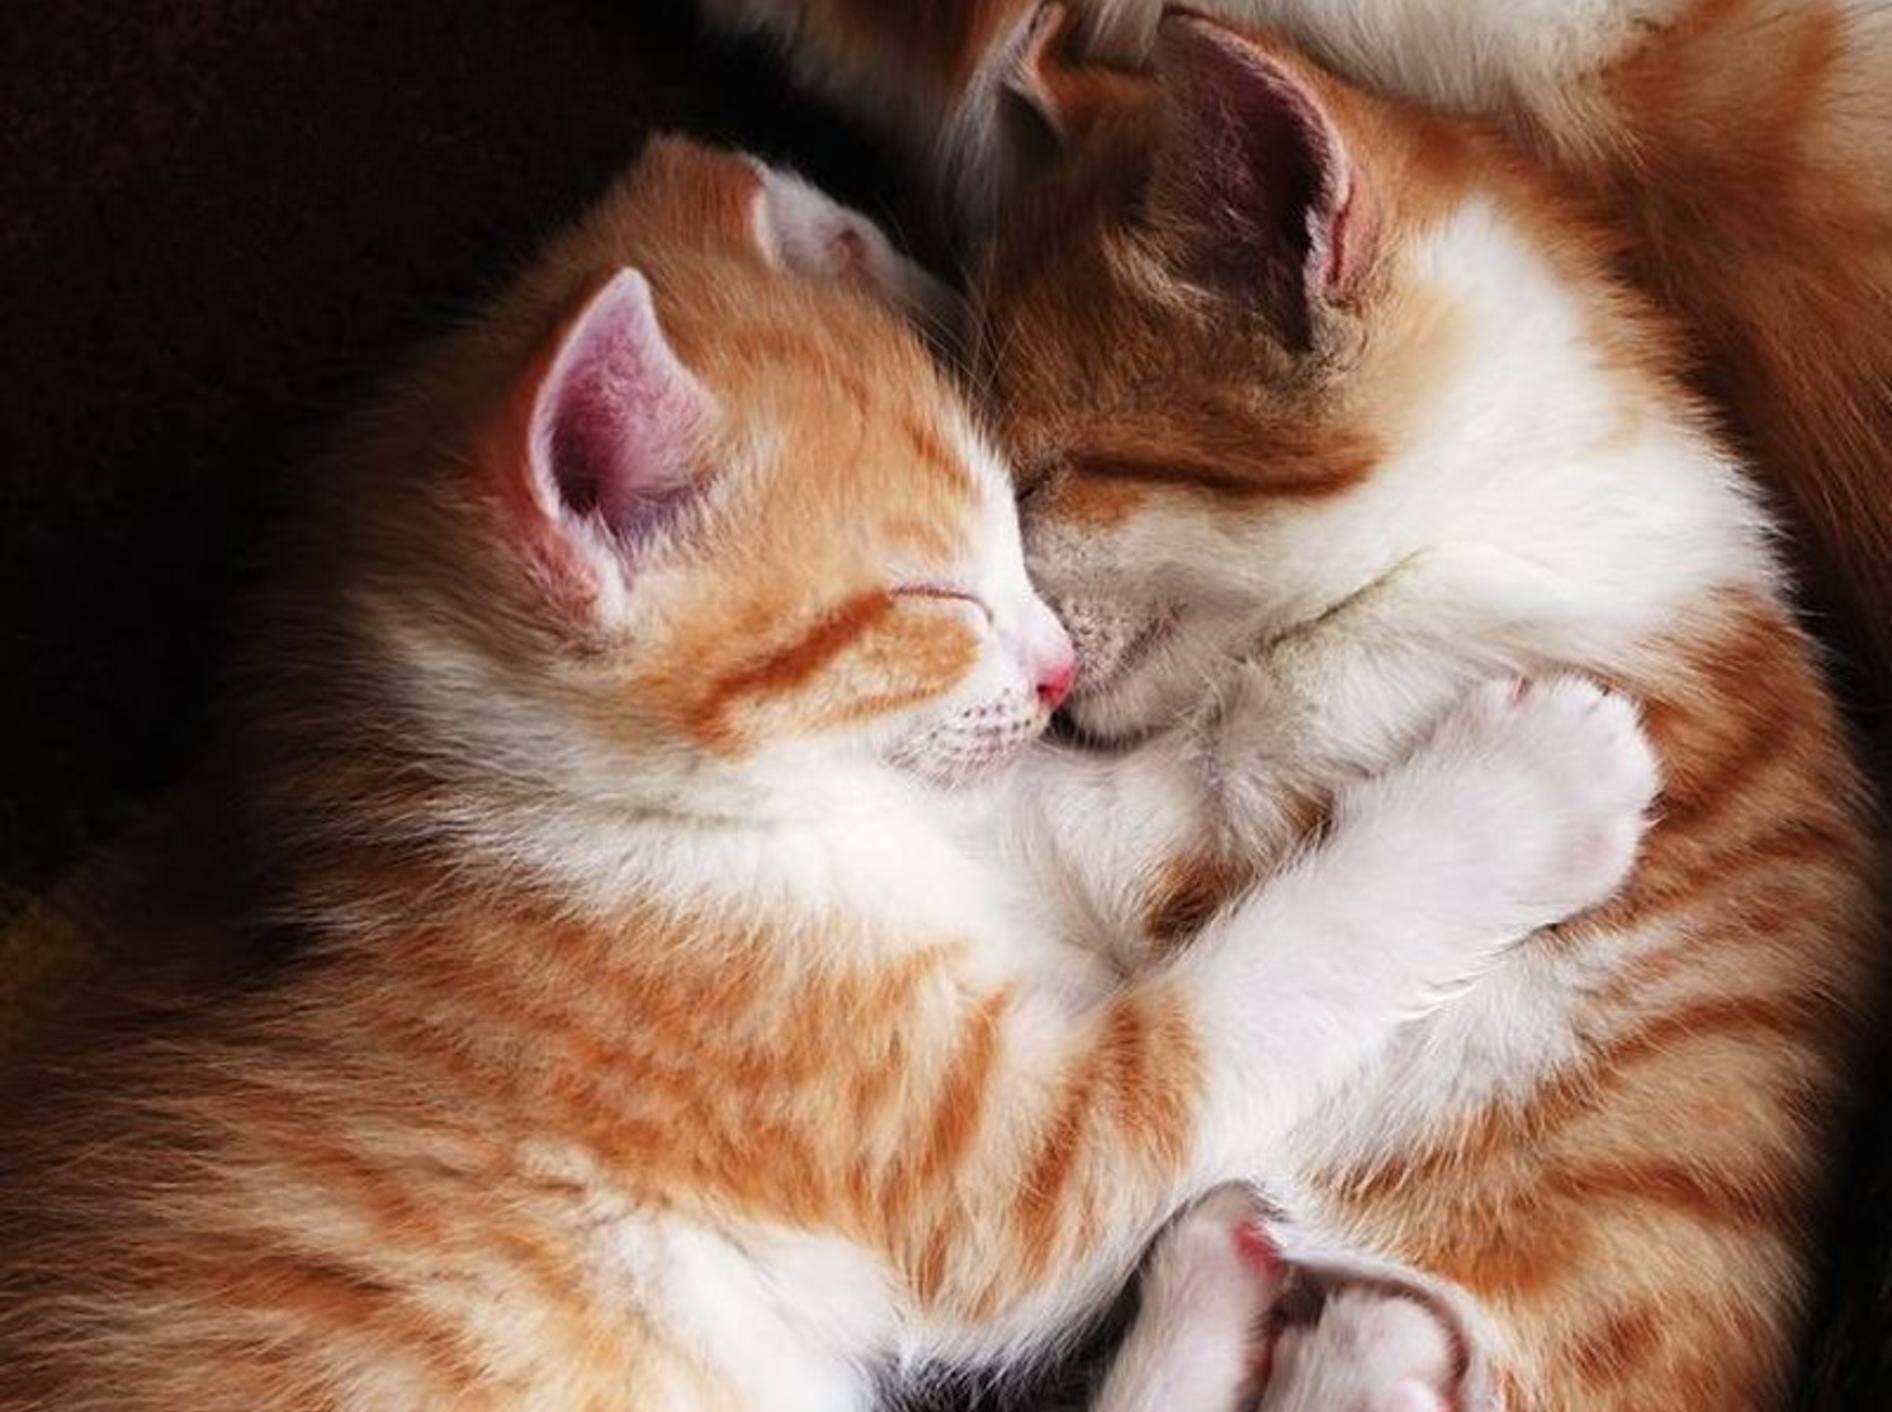 Diese beiden Fellschnütchen sind ein Herz und eine Seele – müssen sich zwei Katzen erst aneinander gewöhnen, braucht es etwas Zeit, bis sie so friedlich kuscheln – Bild: Shutterstock / Mikhail Olykainen